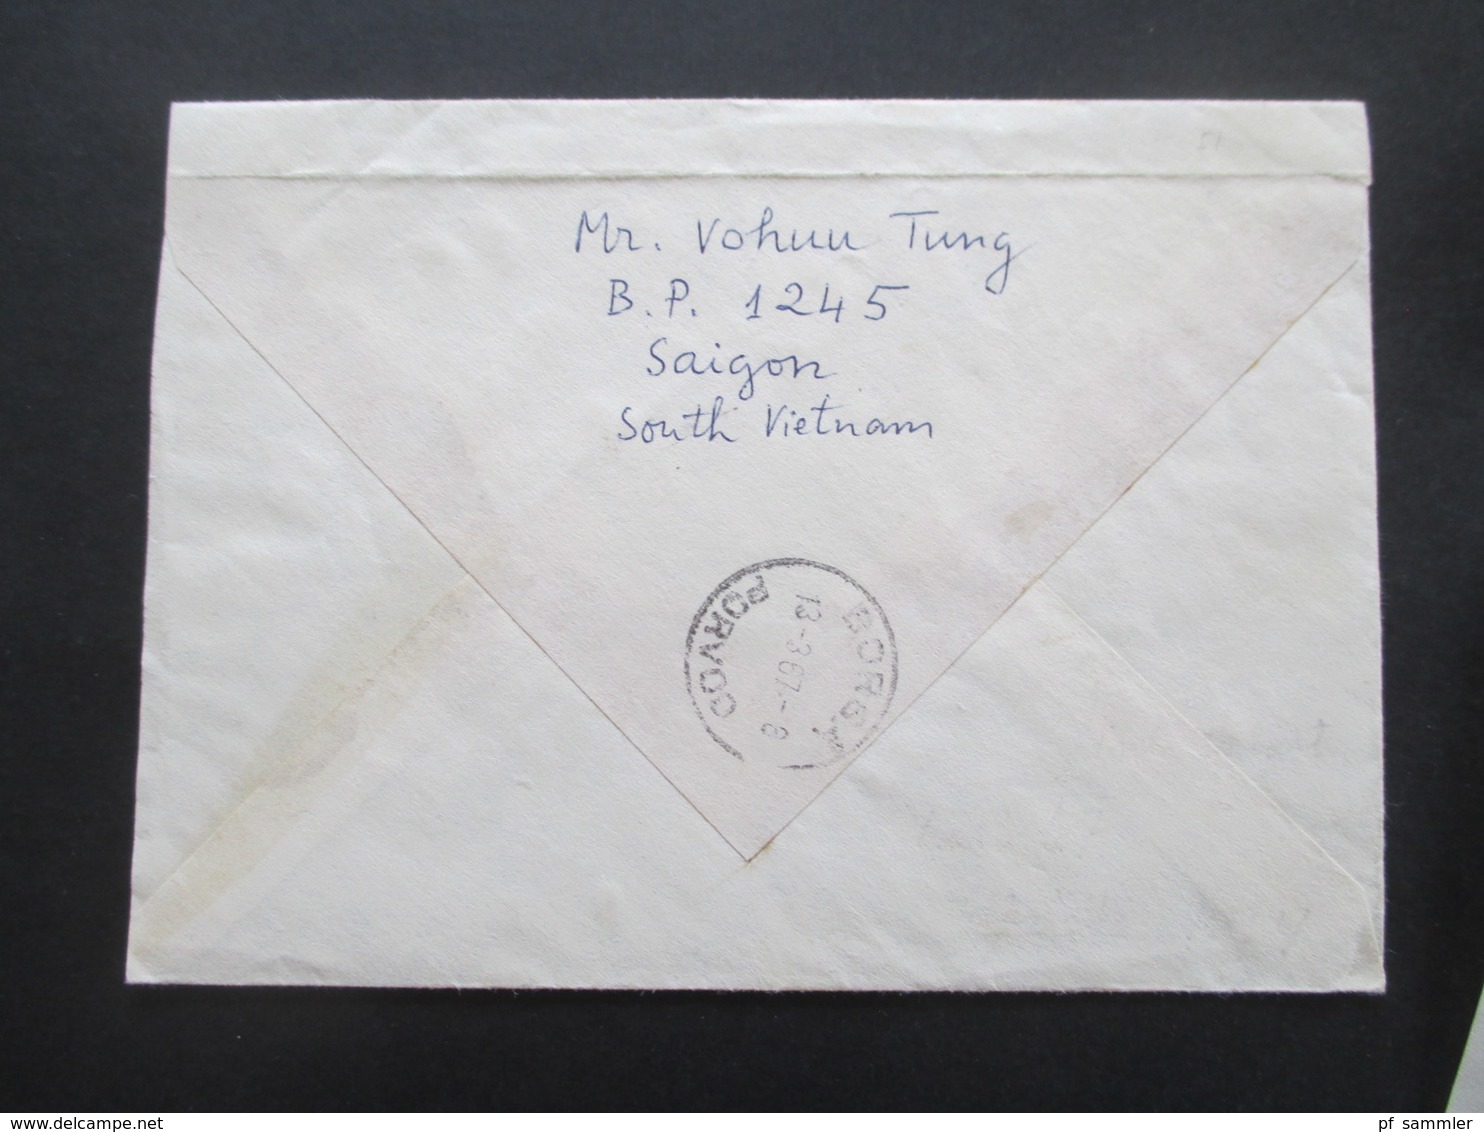 Vietnam / Süd Vietnam 1967 Auslandsbrief nach Finnland! 7 Marken mit Inhalt! Einschreiben!! Voie Maritime